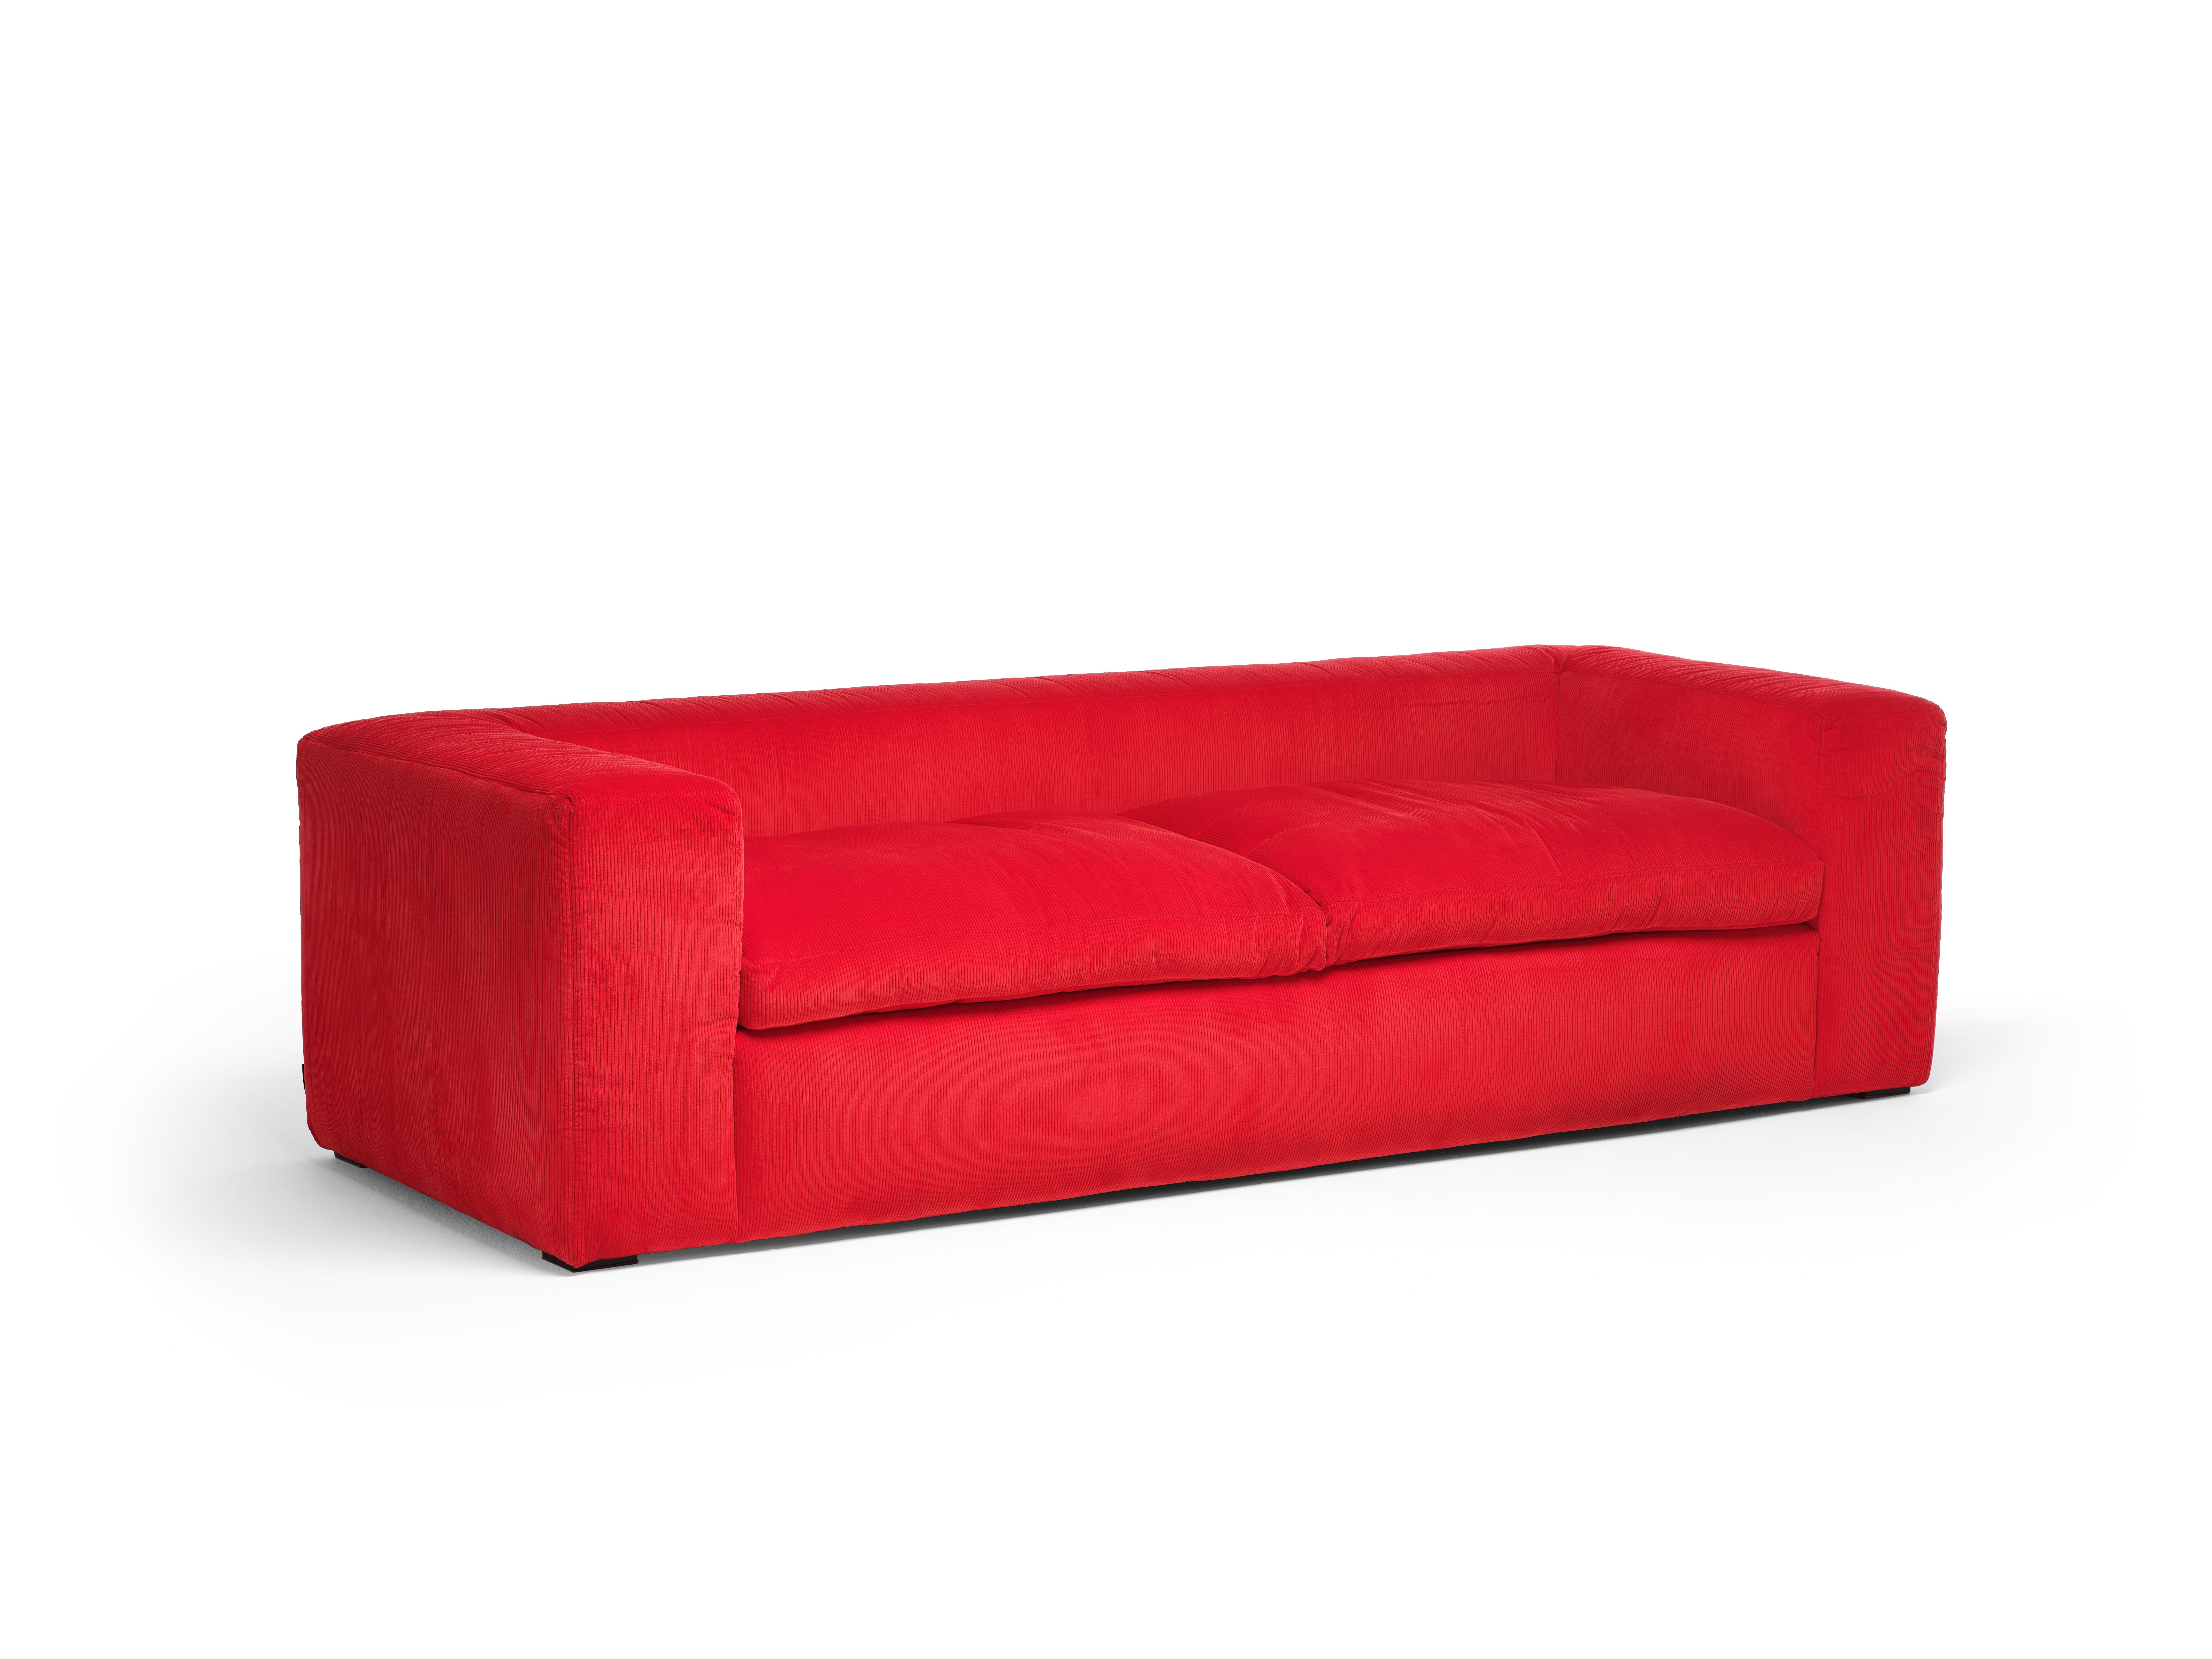 Ein einfaches und essentielles Sofa, das durch das sorgfältige Studium der Proportionen, der Füllmaterialien und der Oberflächenbehandlung einen ausgeklügelten Komfort und ein raffiniertes Image integriert. Es ist ein neuwertiges Produkt, das das